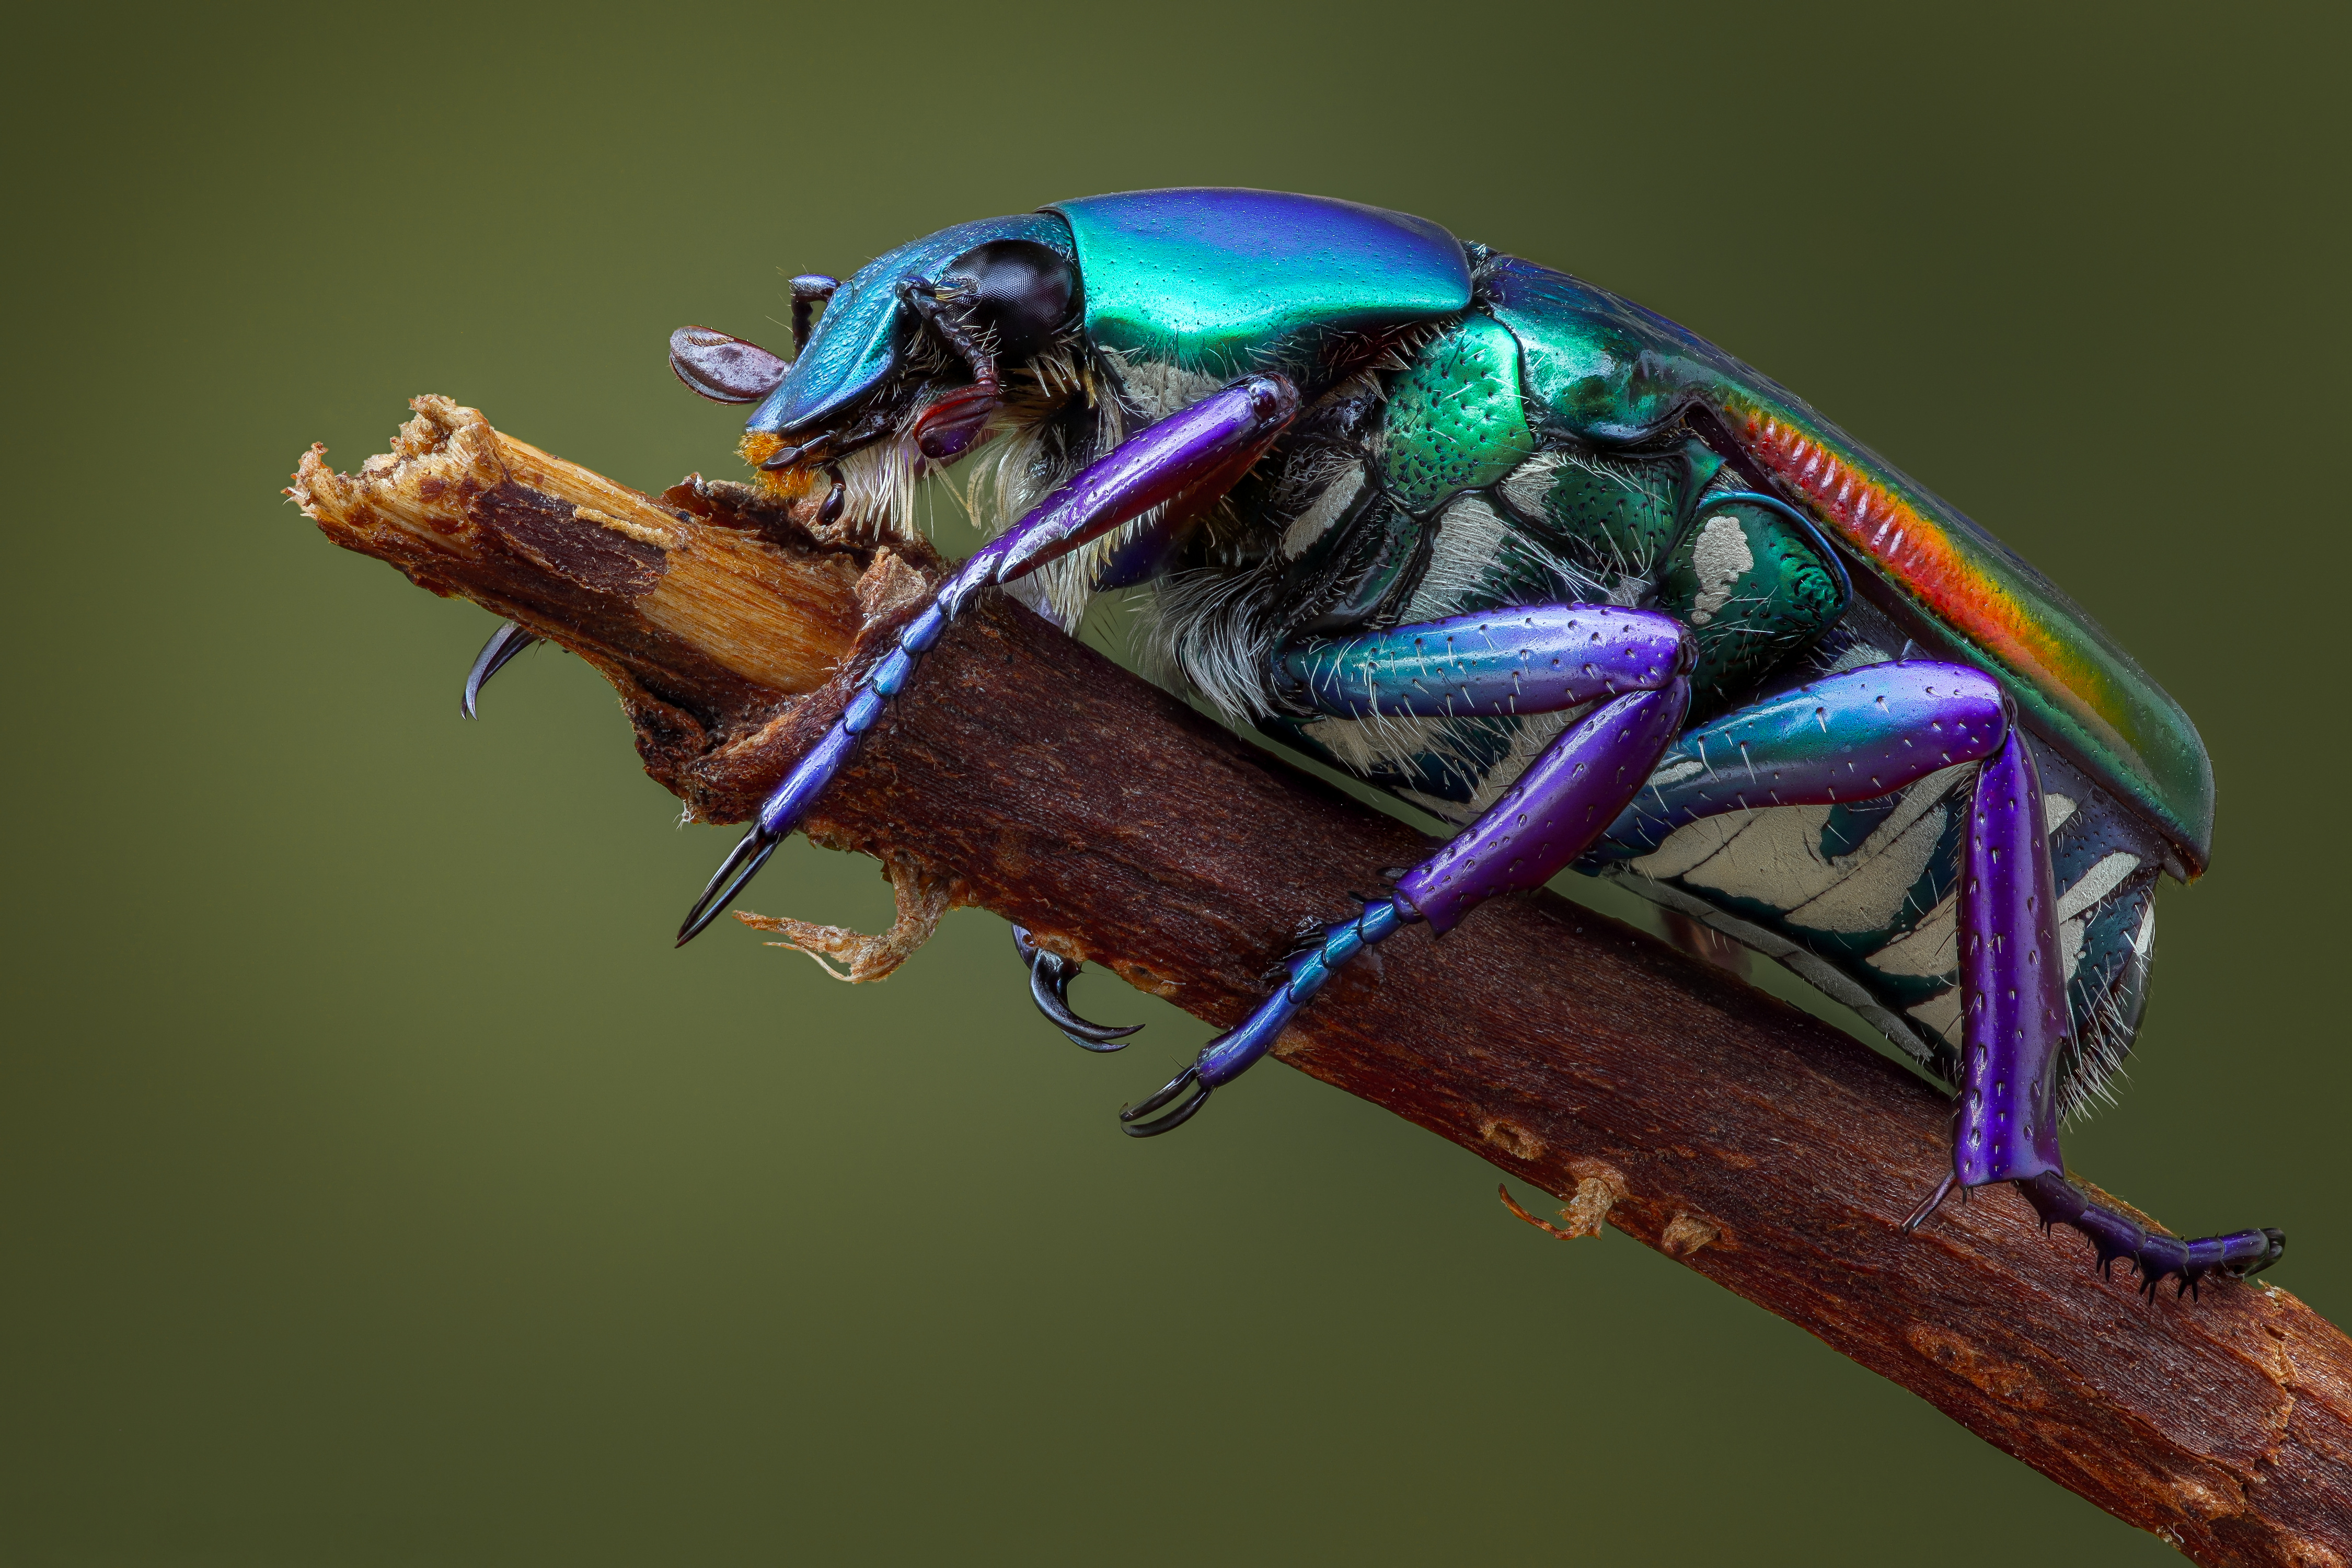 Achtergrond Kevers Insecten pygora sanguineomarginata Dieren Close-up 4500x3000 een dier van dichtbij